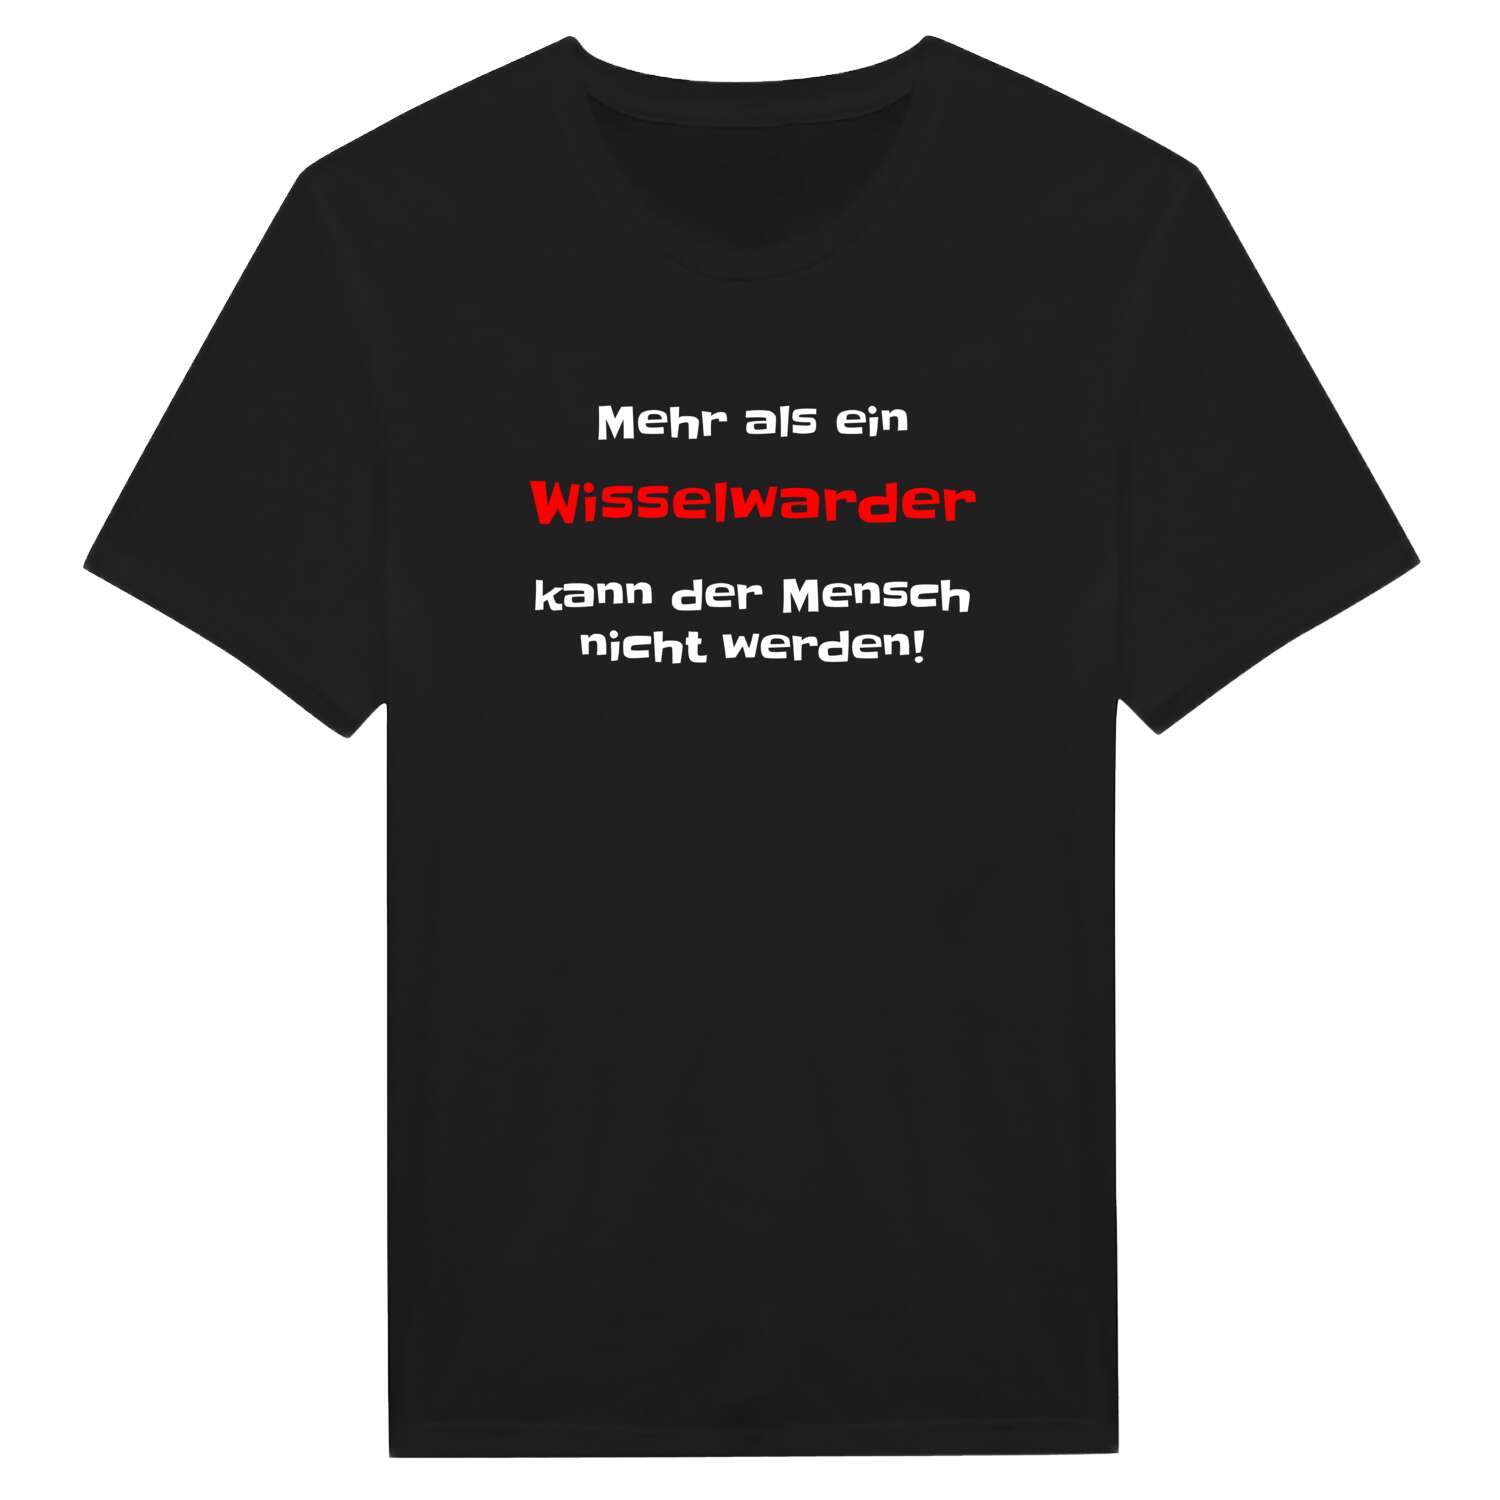 Wisselward T-Shirt »Mehr als ein«